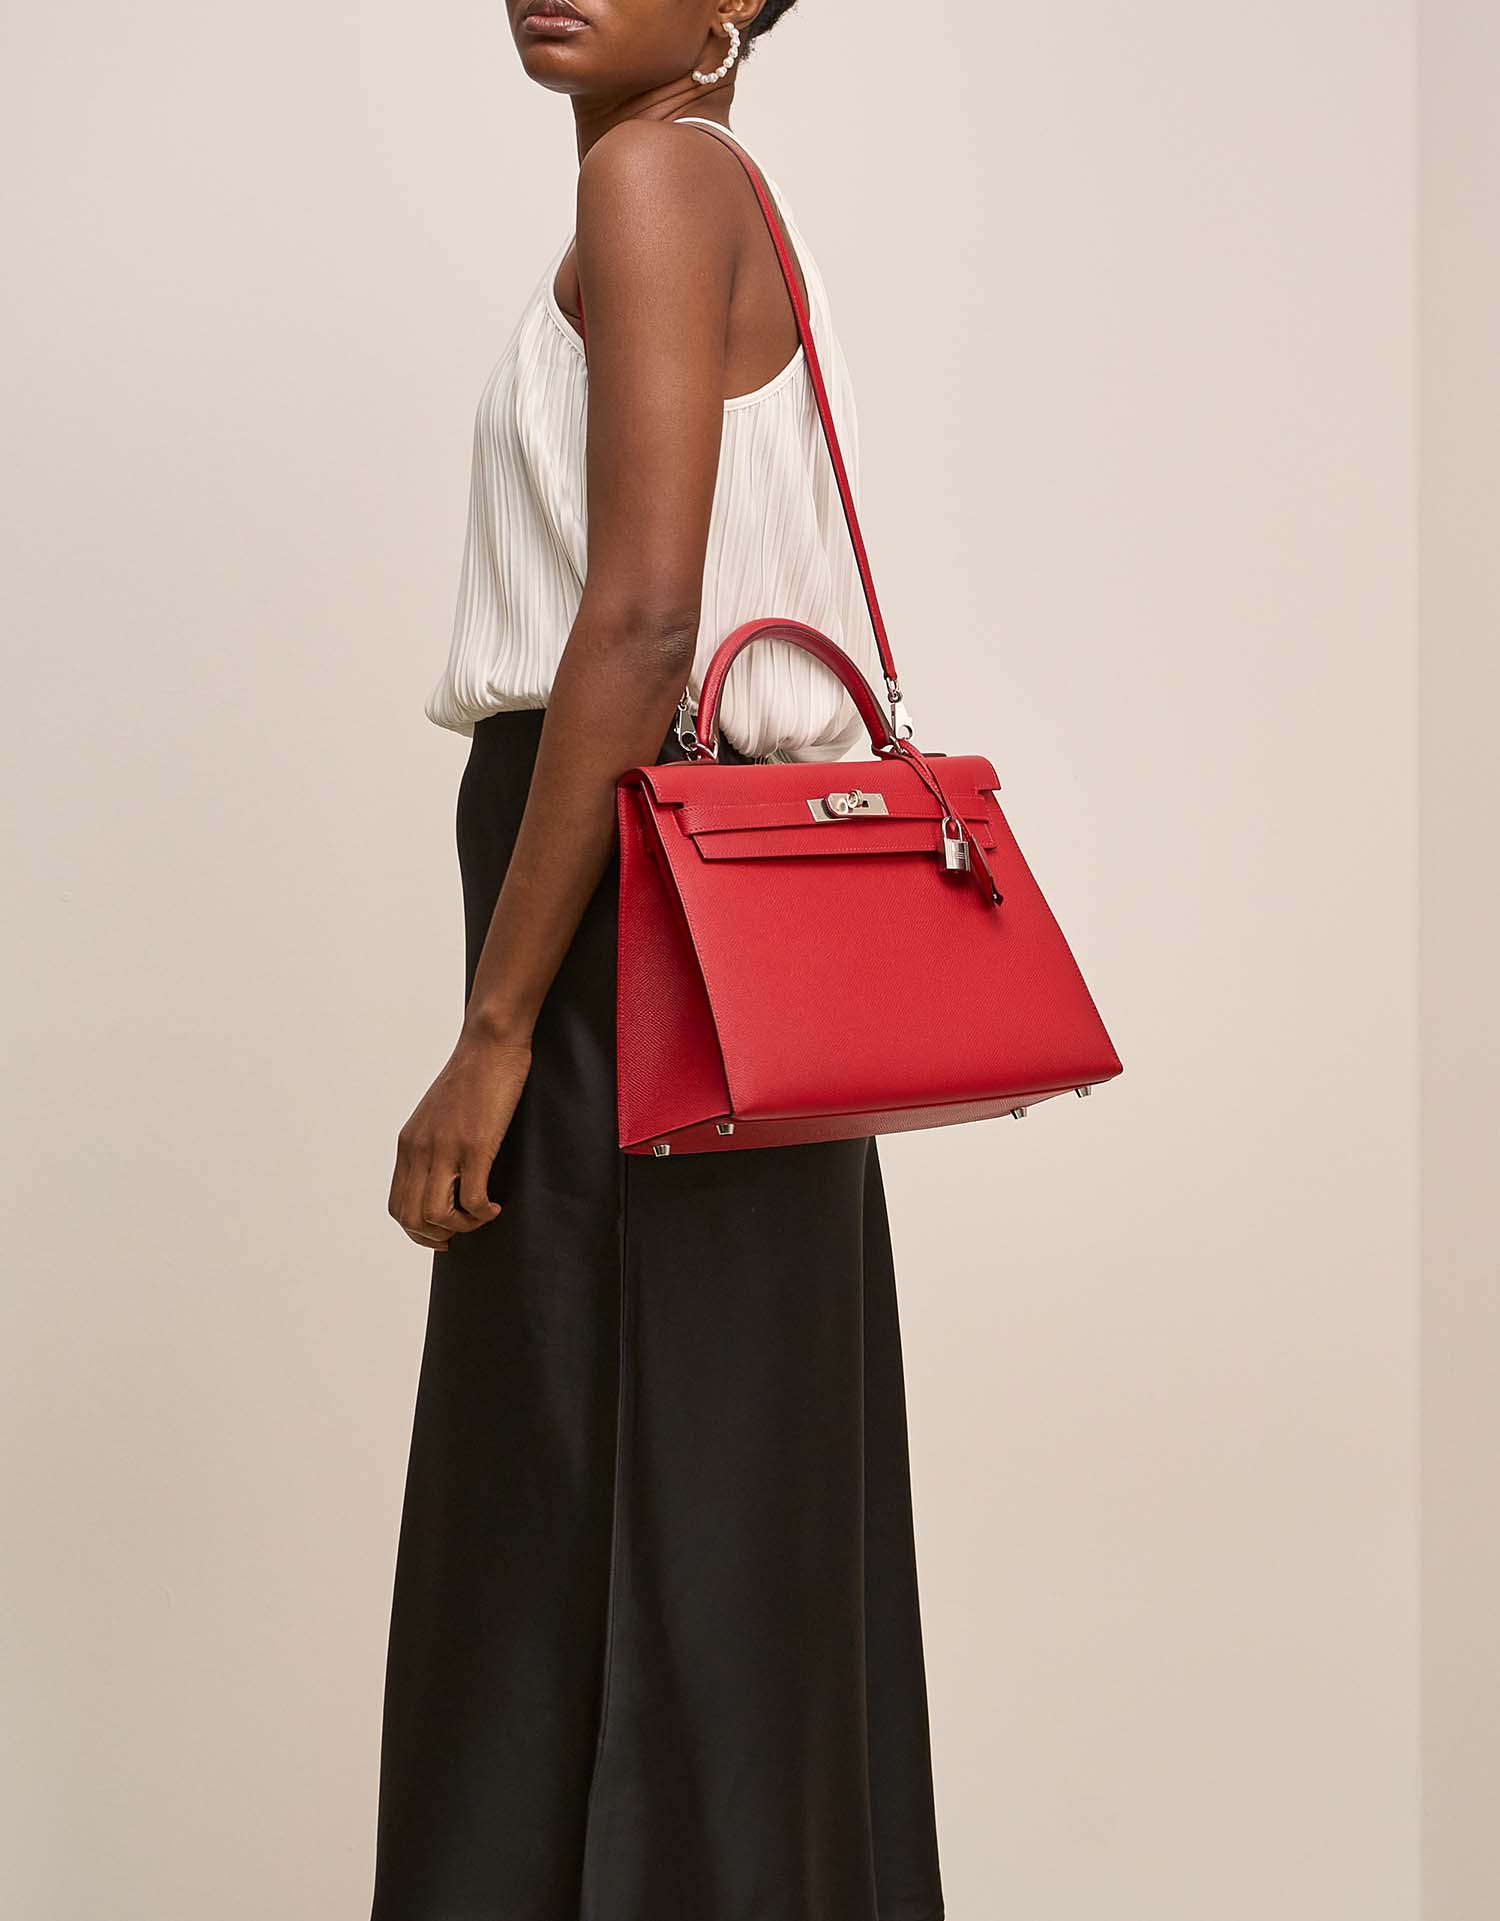 Hermès Kelly 32 RougeCasaque auf Model | Verkaufen Sie Ihre Designertasche auf Saclab.com